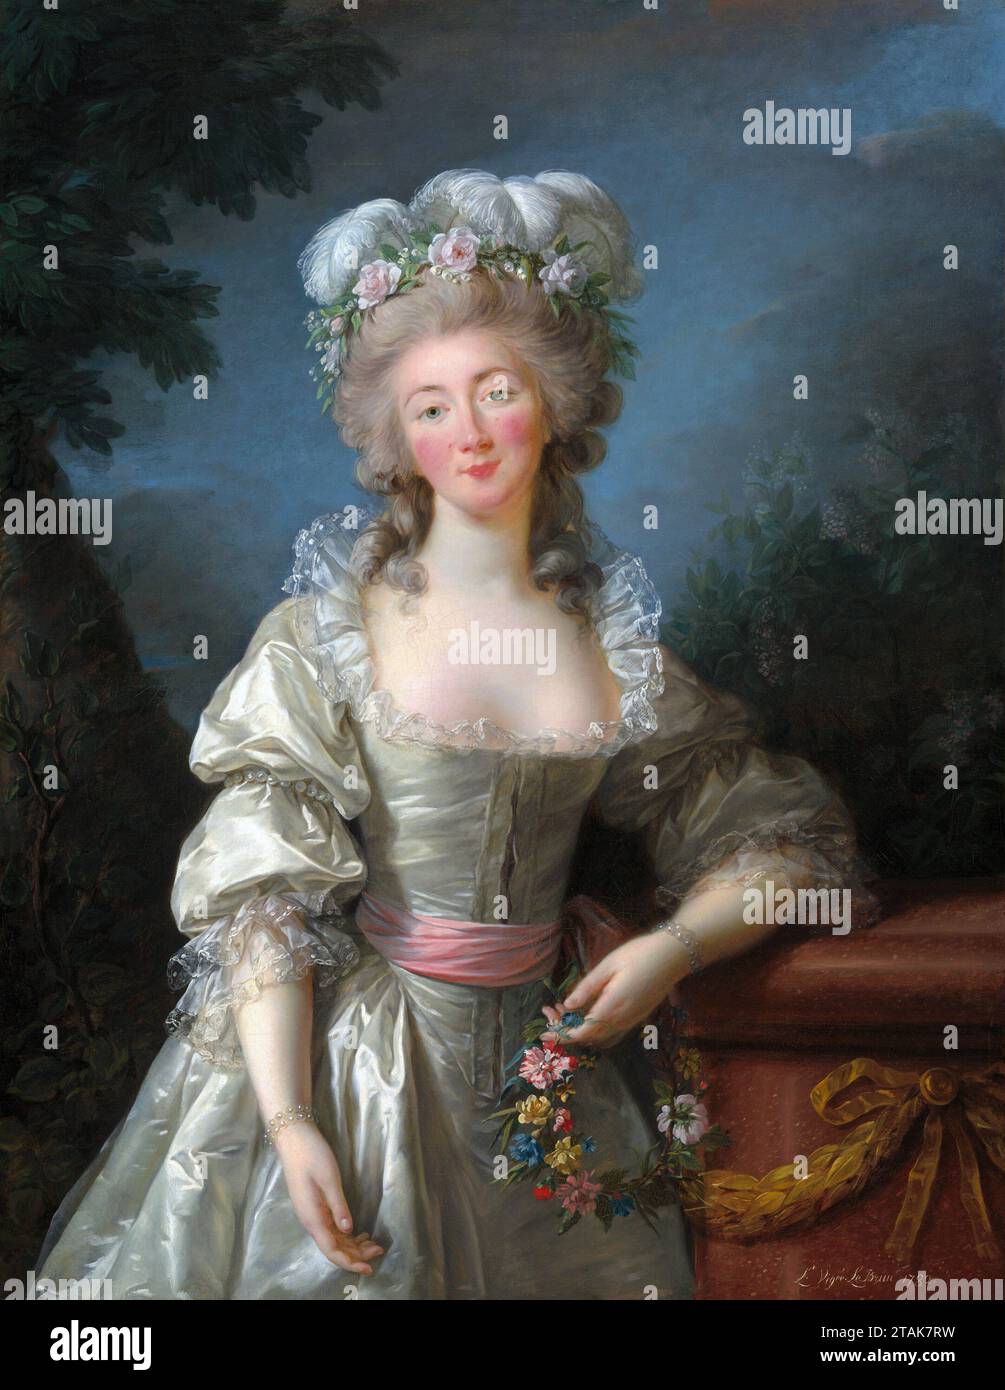 Madame du Barry. Portrait of the mistress of Louis XV of France, Jeanne Bécu, Comtesse du Barry (1743-1793) by Élisabeth Vigée Le Brun (1755-1842), oil on canvas, 1782 Stock Photo